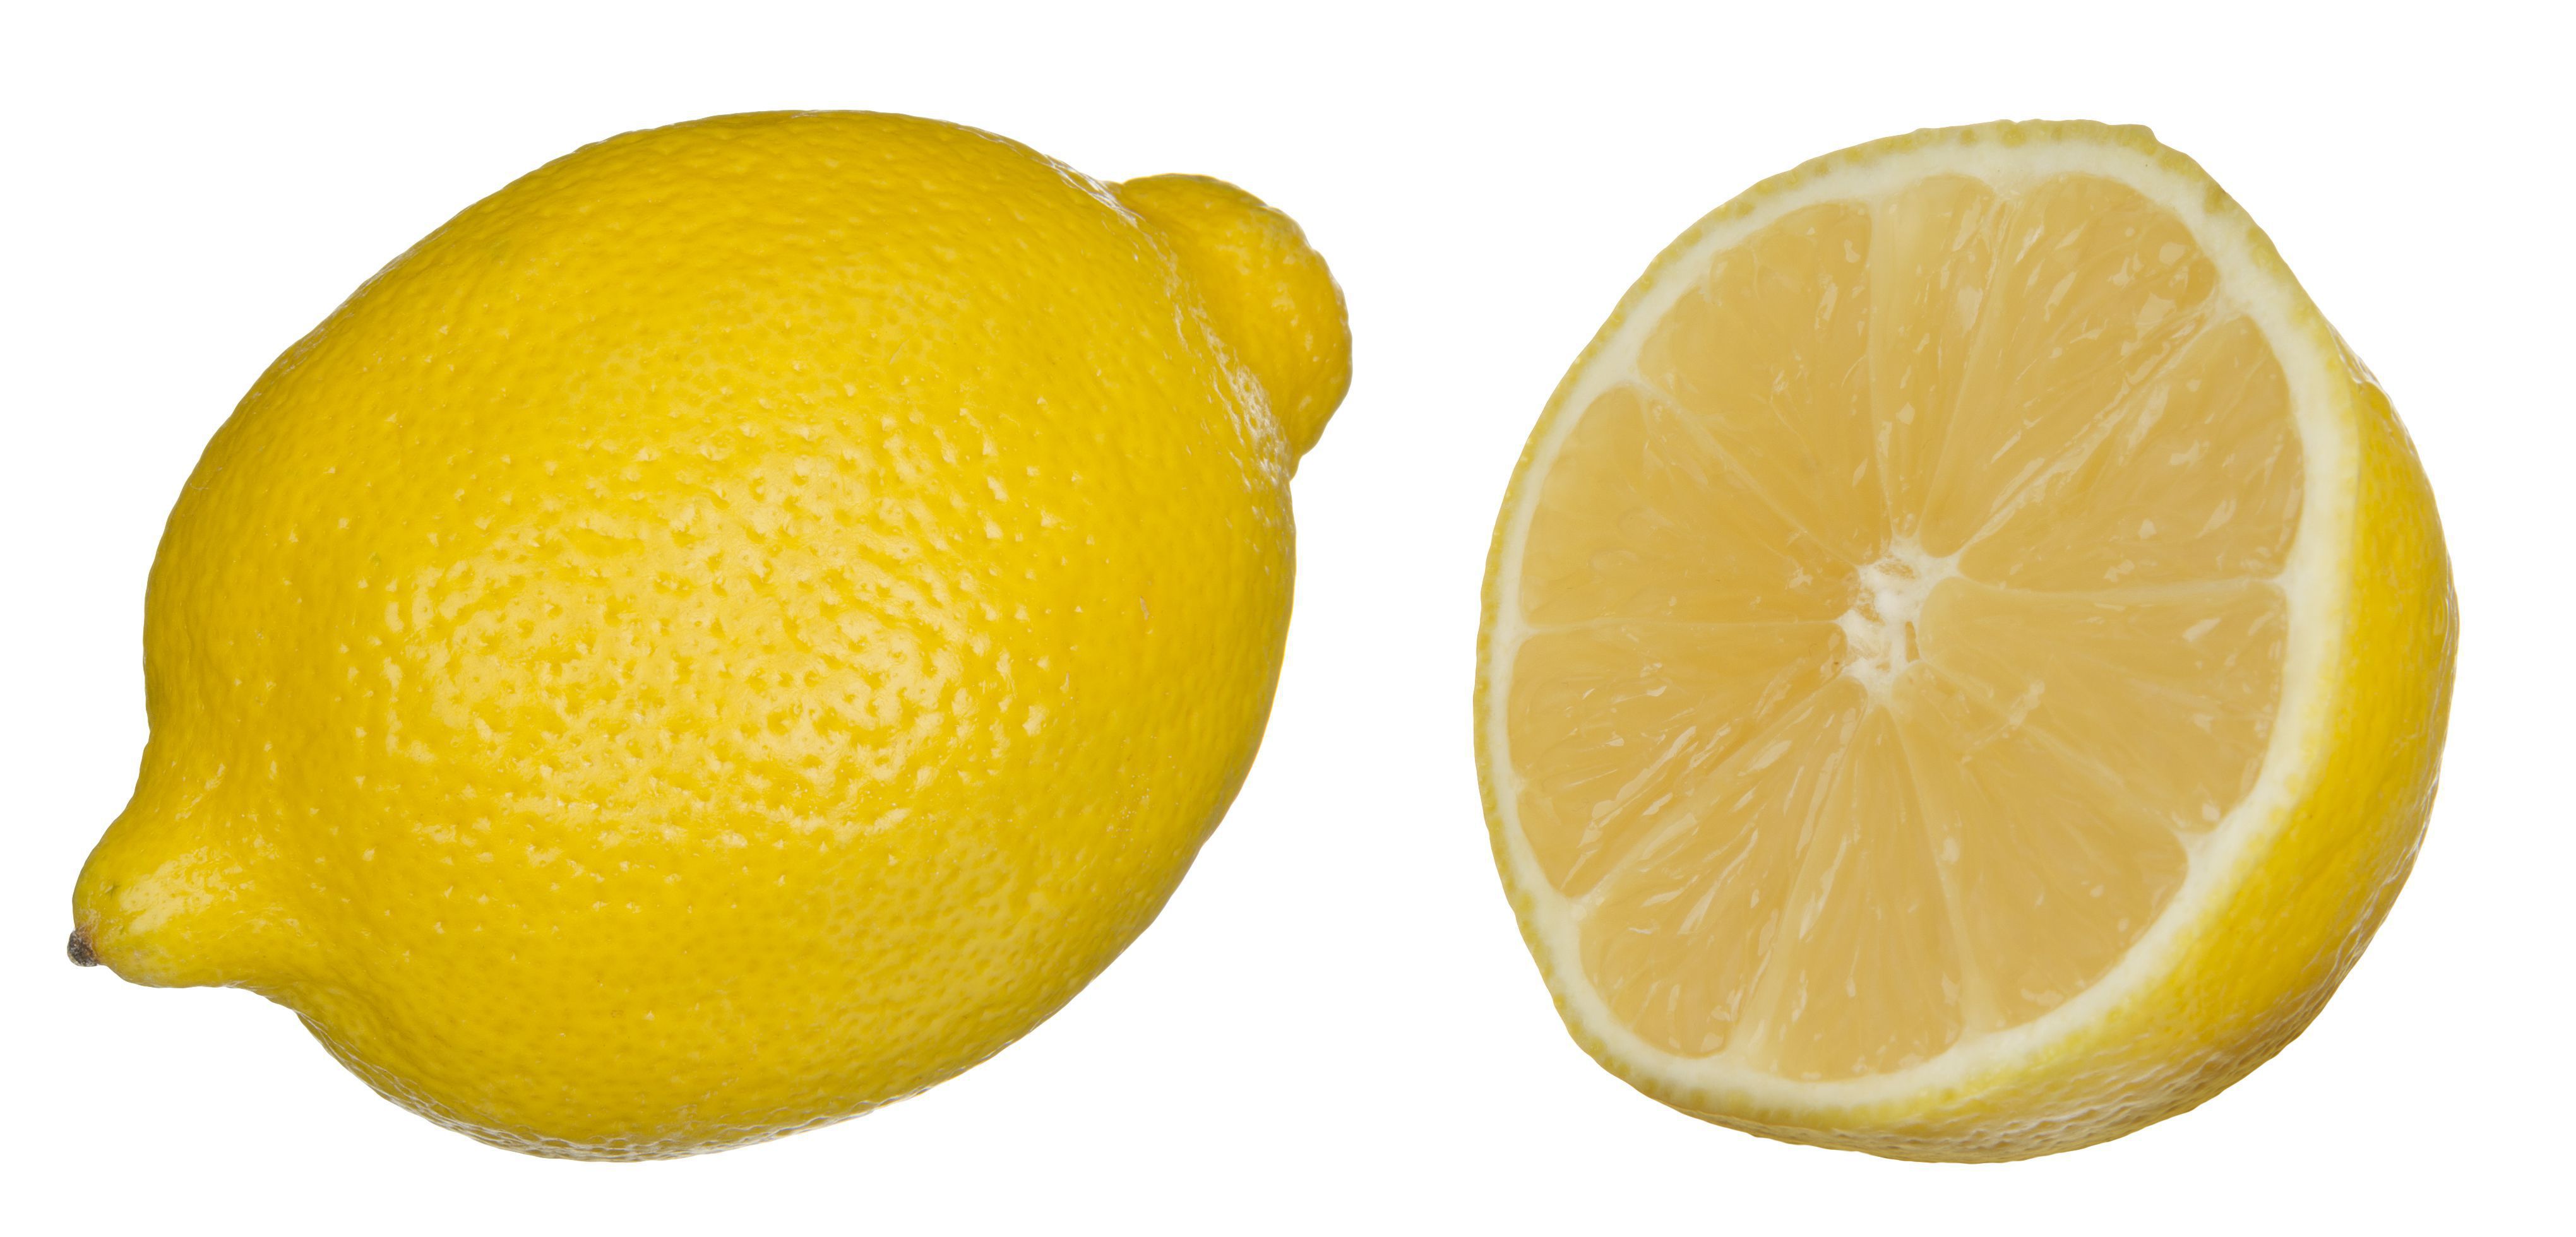 레몬 벽지 hd,감귤류,레몬,라임,마이어 레몬,과일